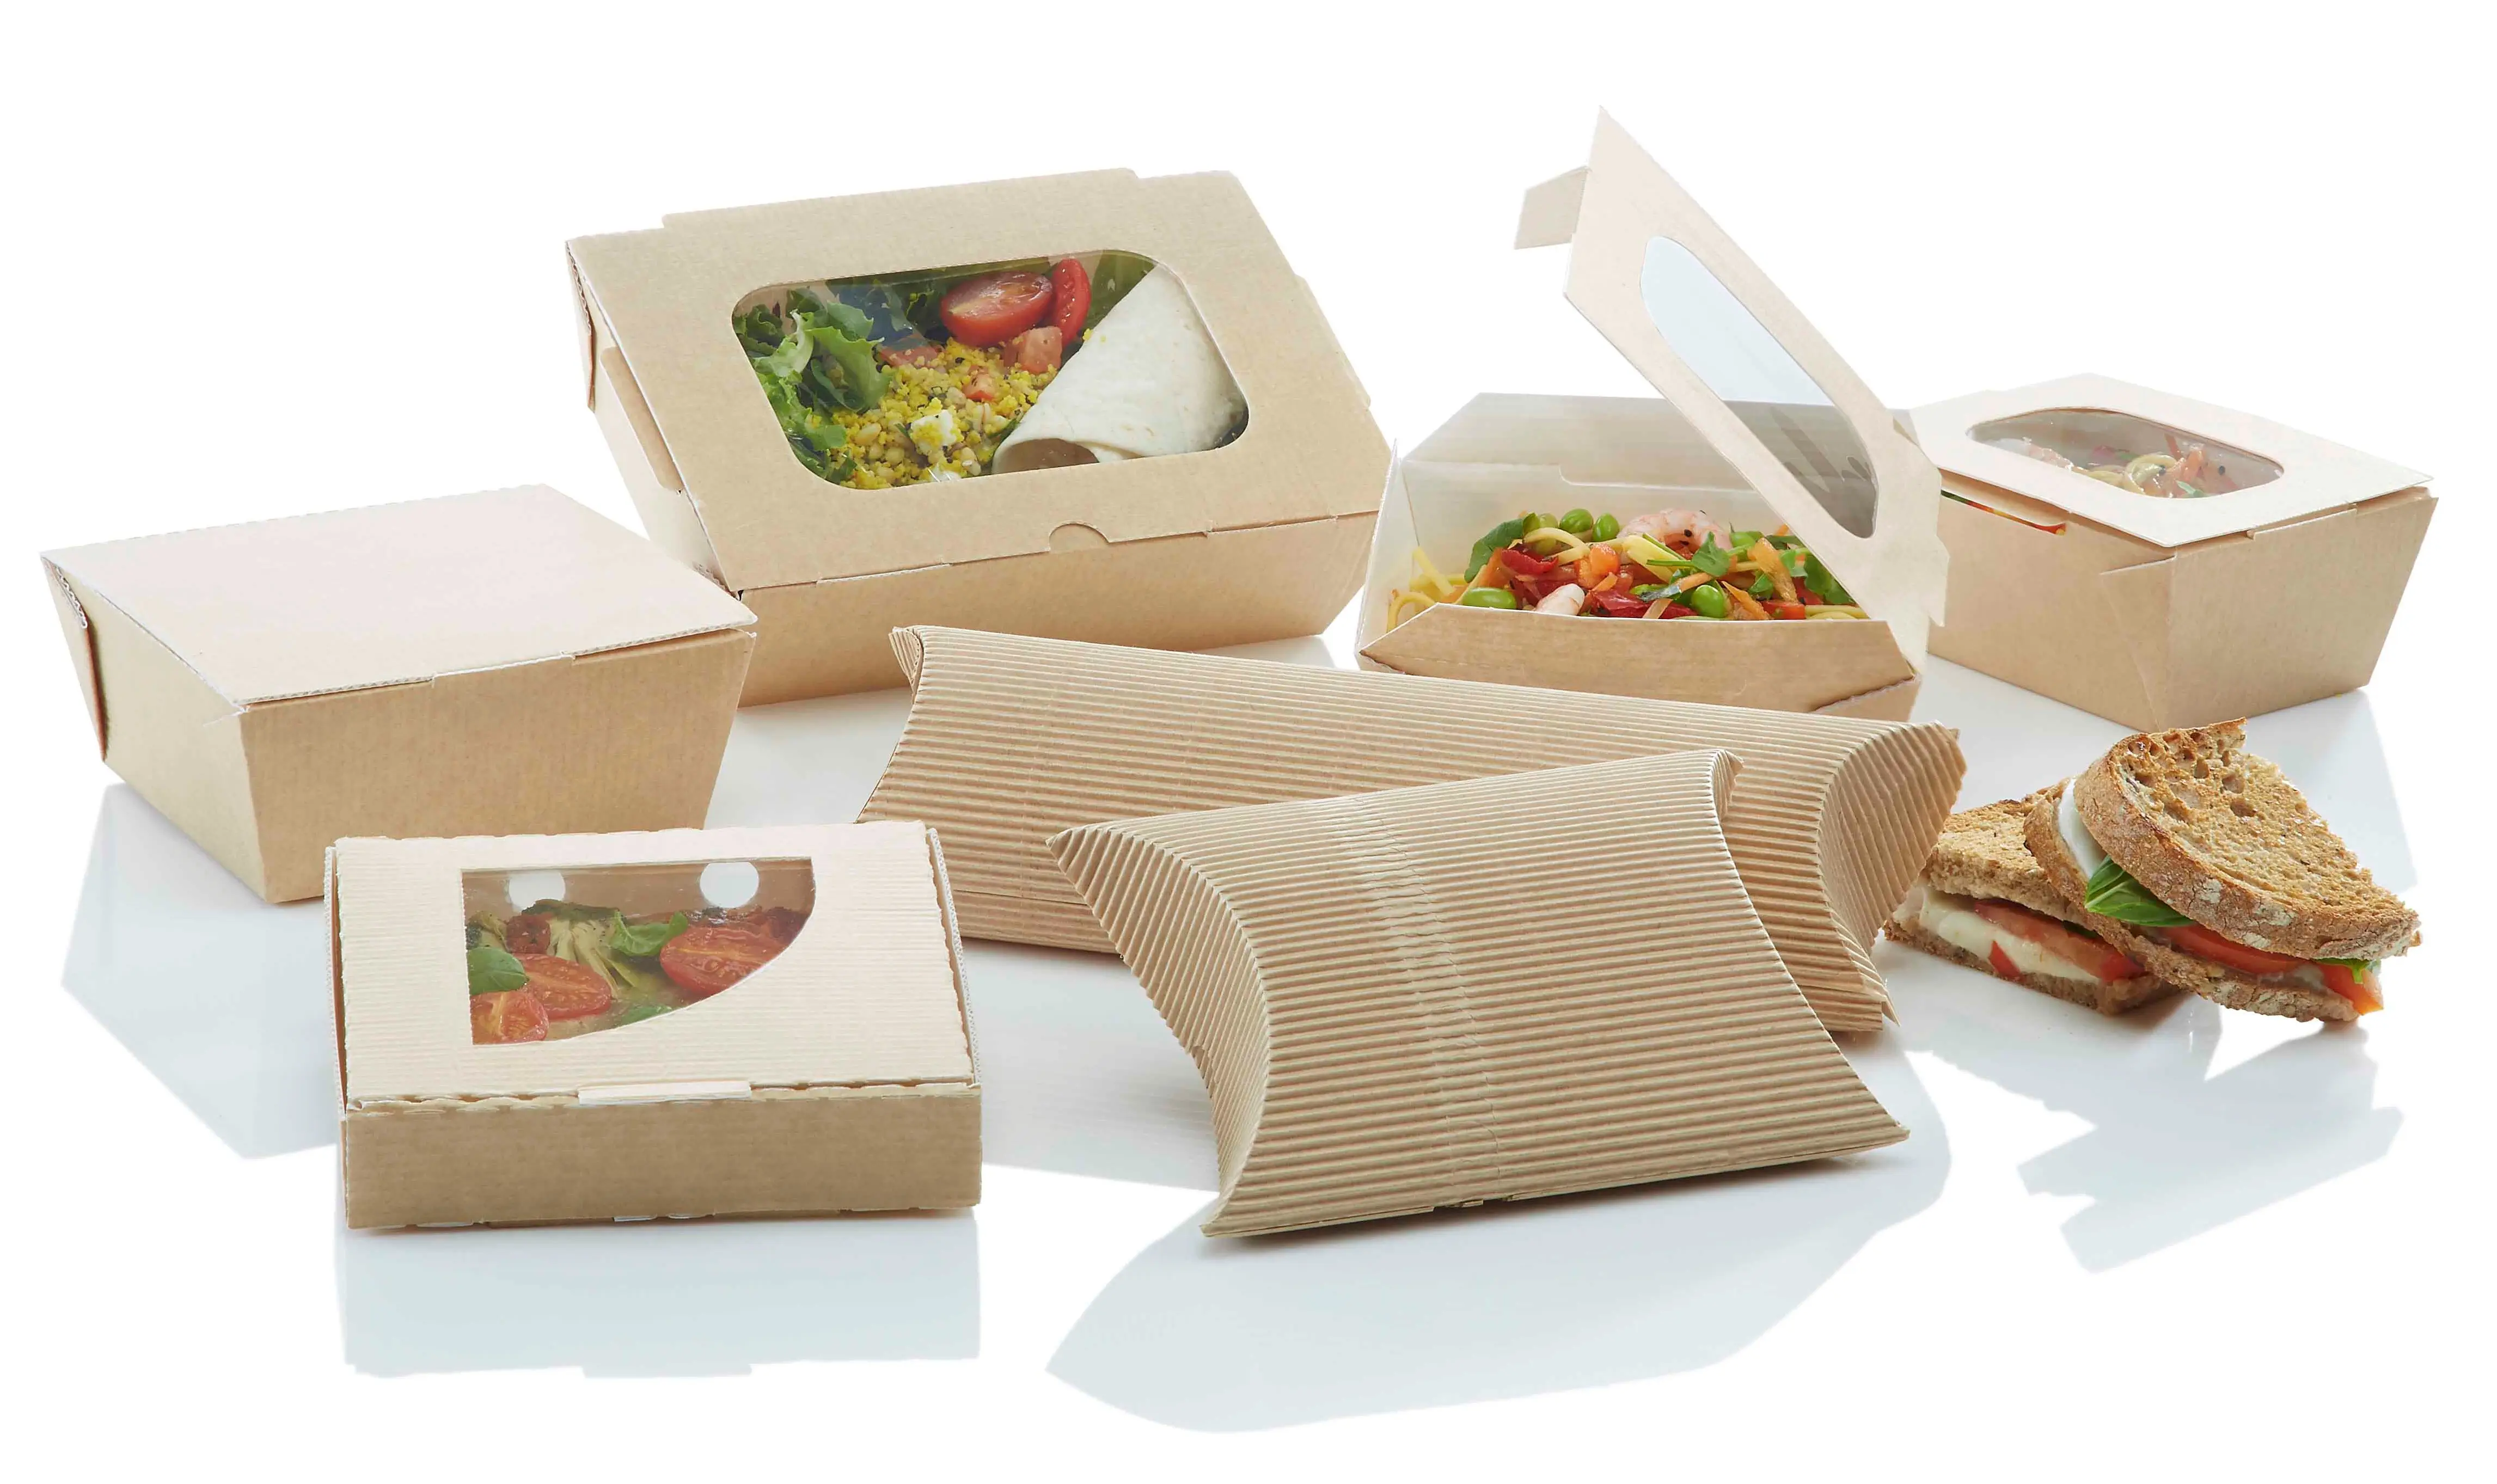 Упаковка питания. Пищевая упаковка. Бумажная упаковка для пищевых продуктов. Эко упаковка для пищевых продуктов. Экологичная упаковка для еды.